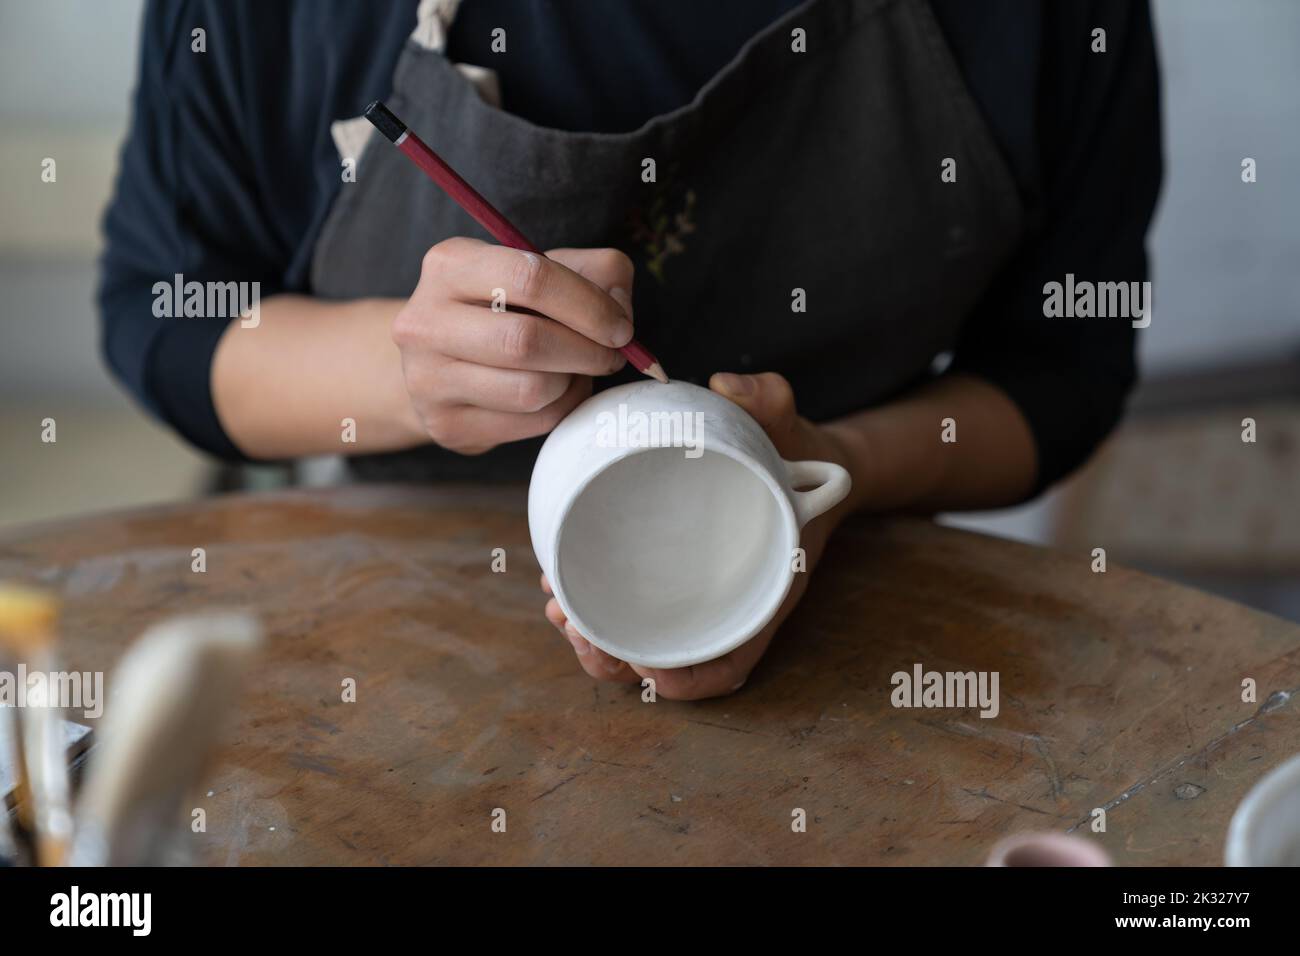 Artesana hace un dibujo del futuro patrón en taza blanca para decorar la cocina con plato de arcilla Foto de stock